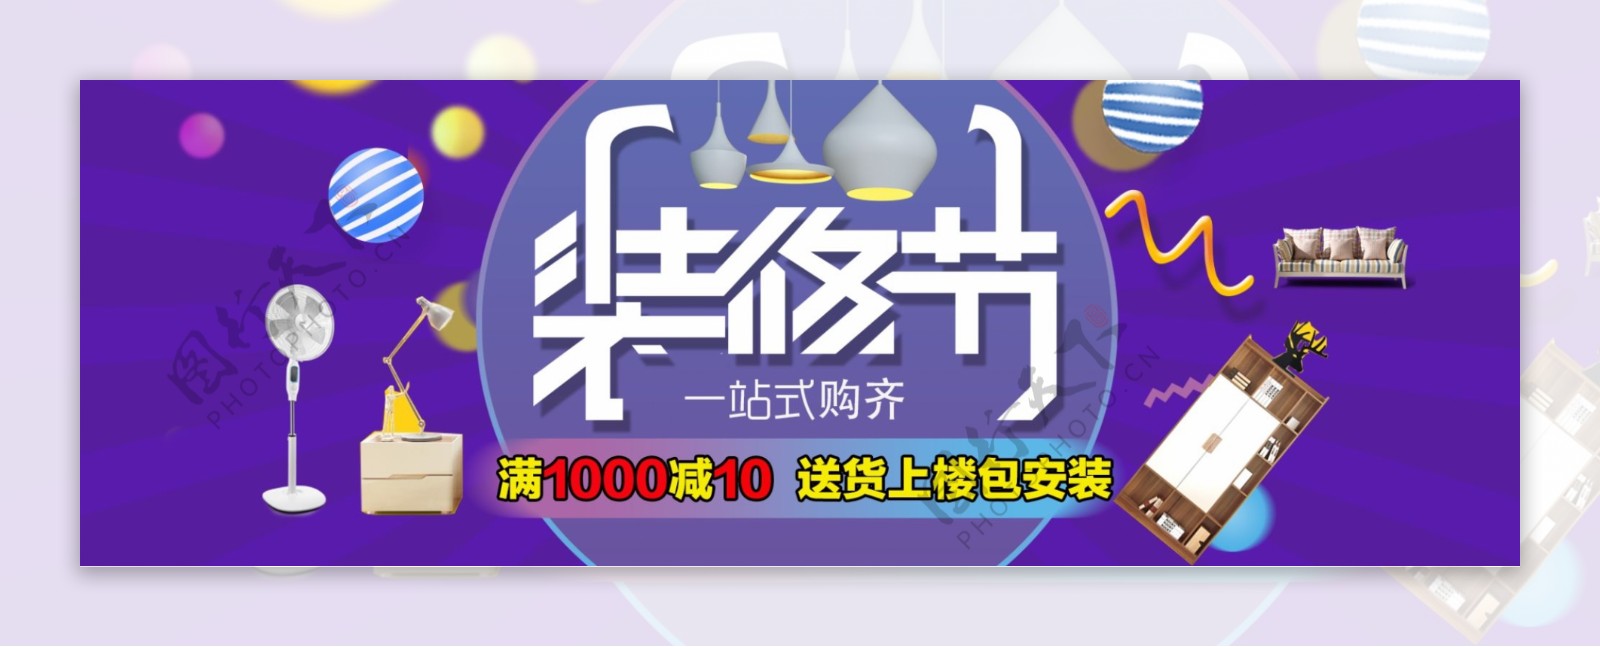 紫色气球炫酷风日用家居电商banner淘宝海报